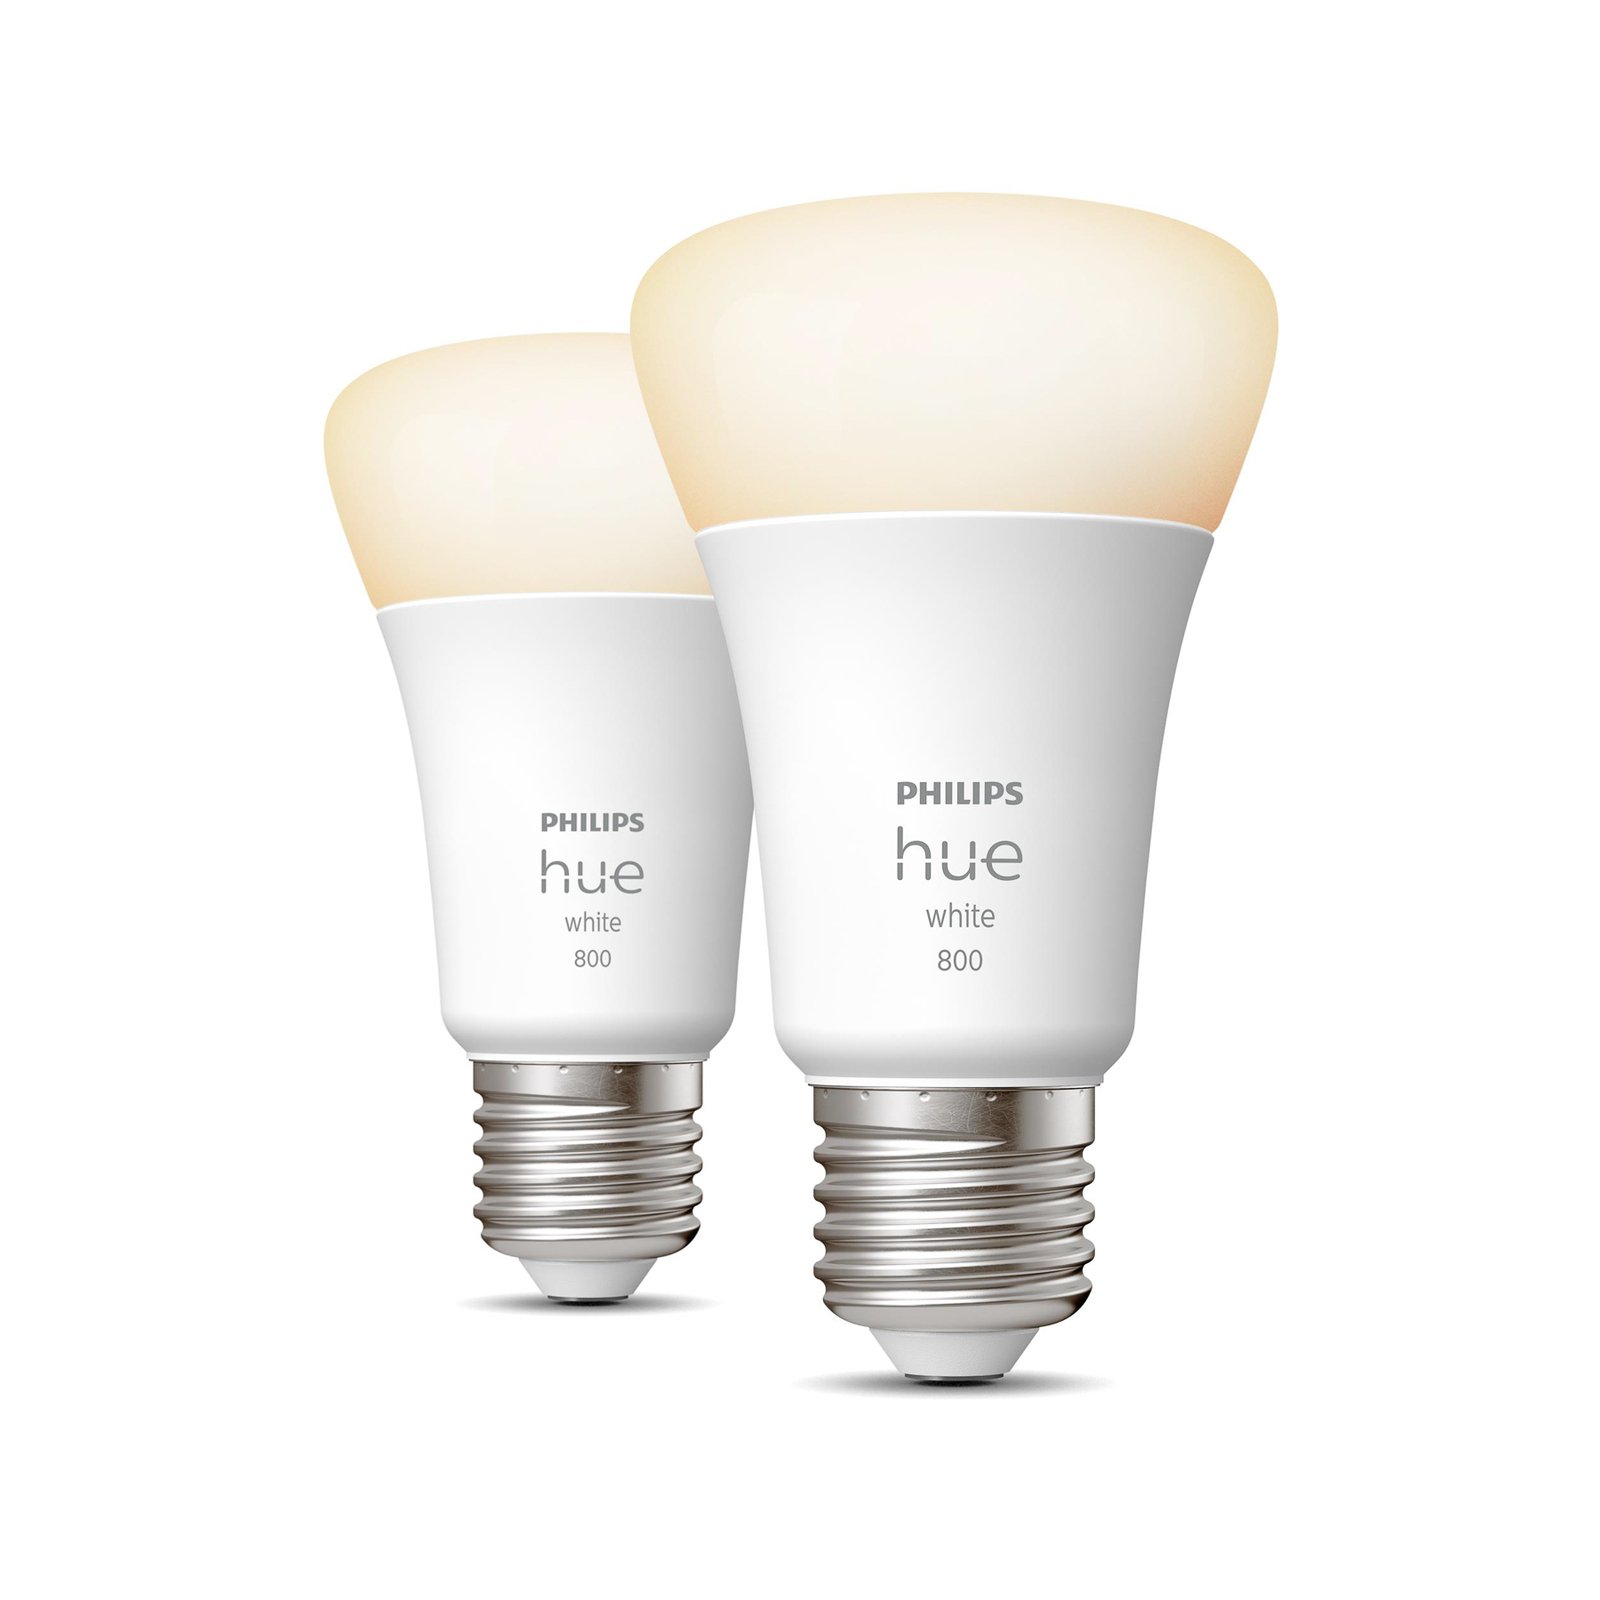 Maak leven Adviseur vlotter Philips Hue White 9W E27 LED lamp, 2 per set | Lampen24.nl